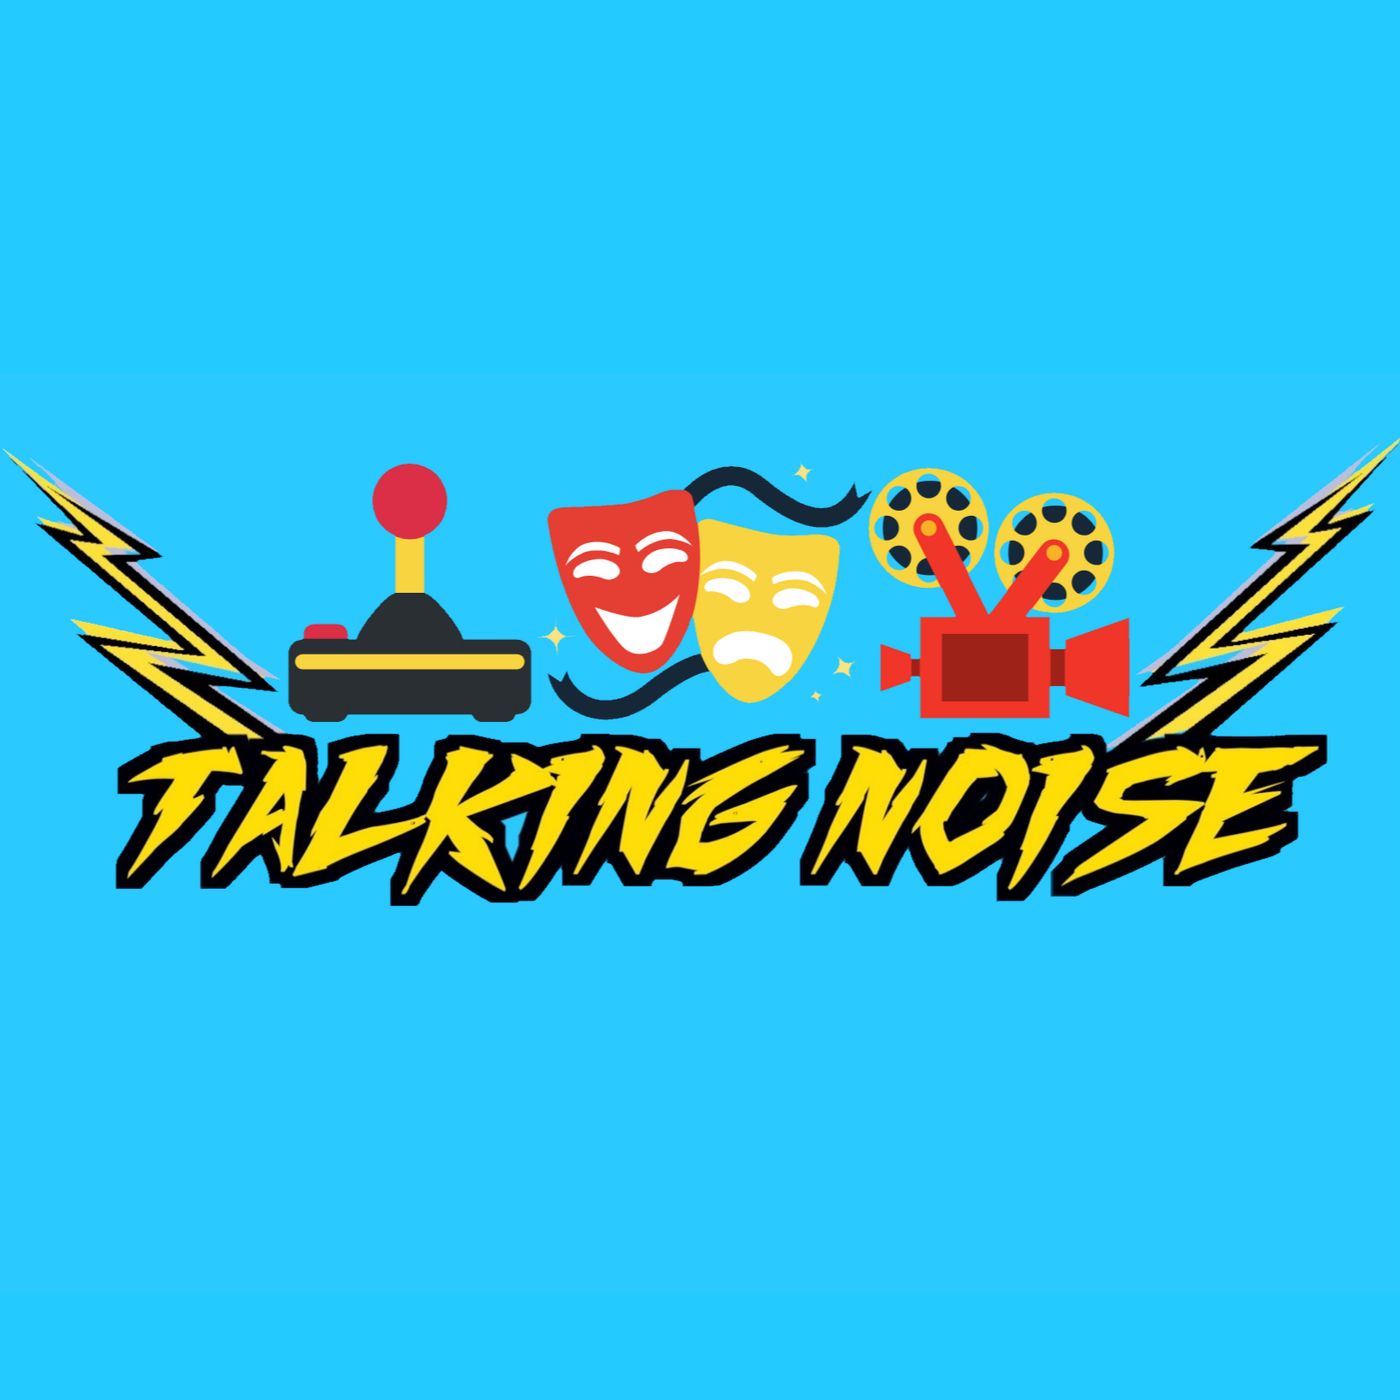 Talking Noise